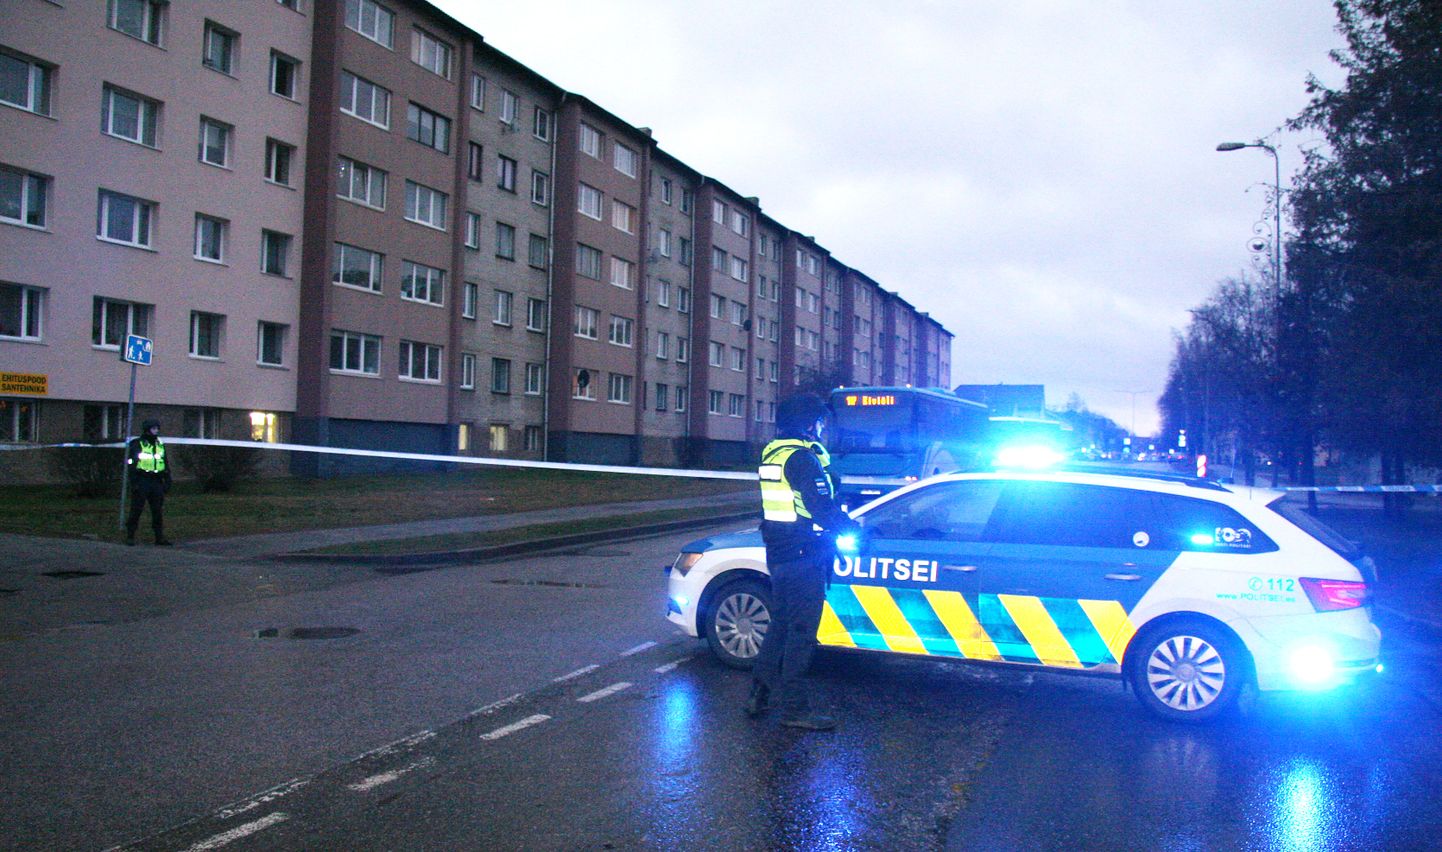 Kohtla-Järvel busside pihta laskmise järel käivitati kiiresti politseioperatsioon.